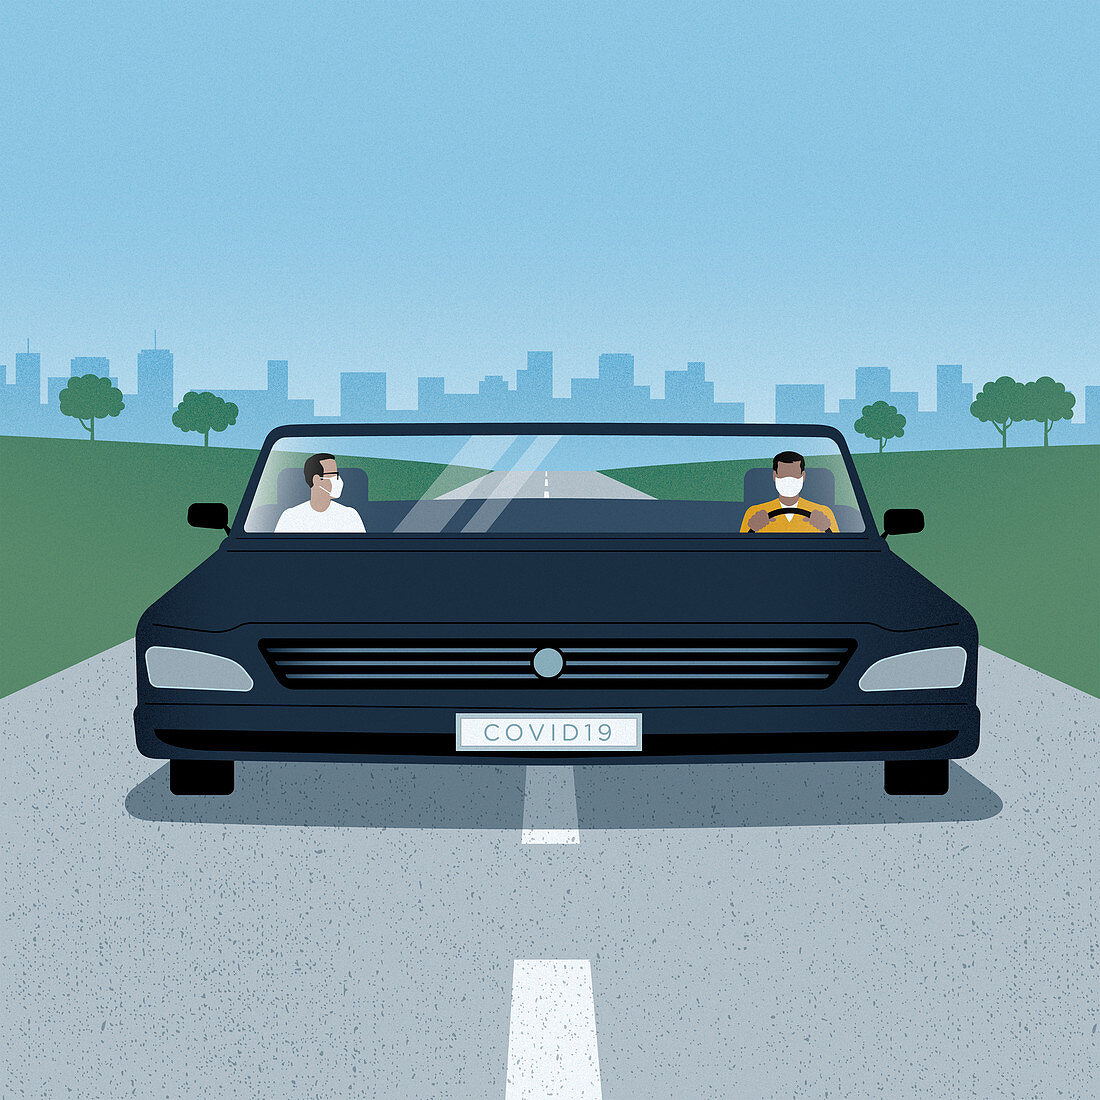 Men social distancing in wide car, illustration